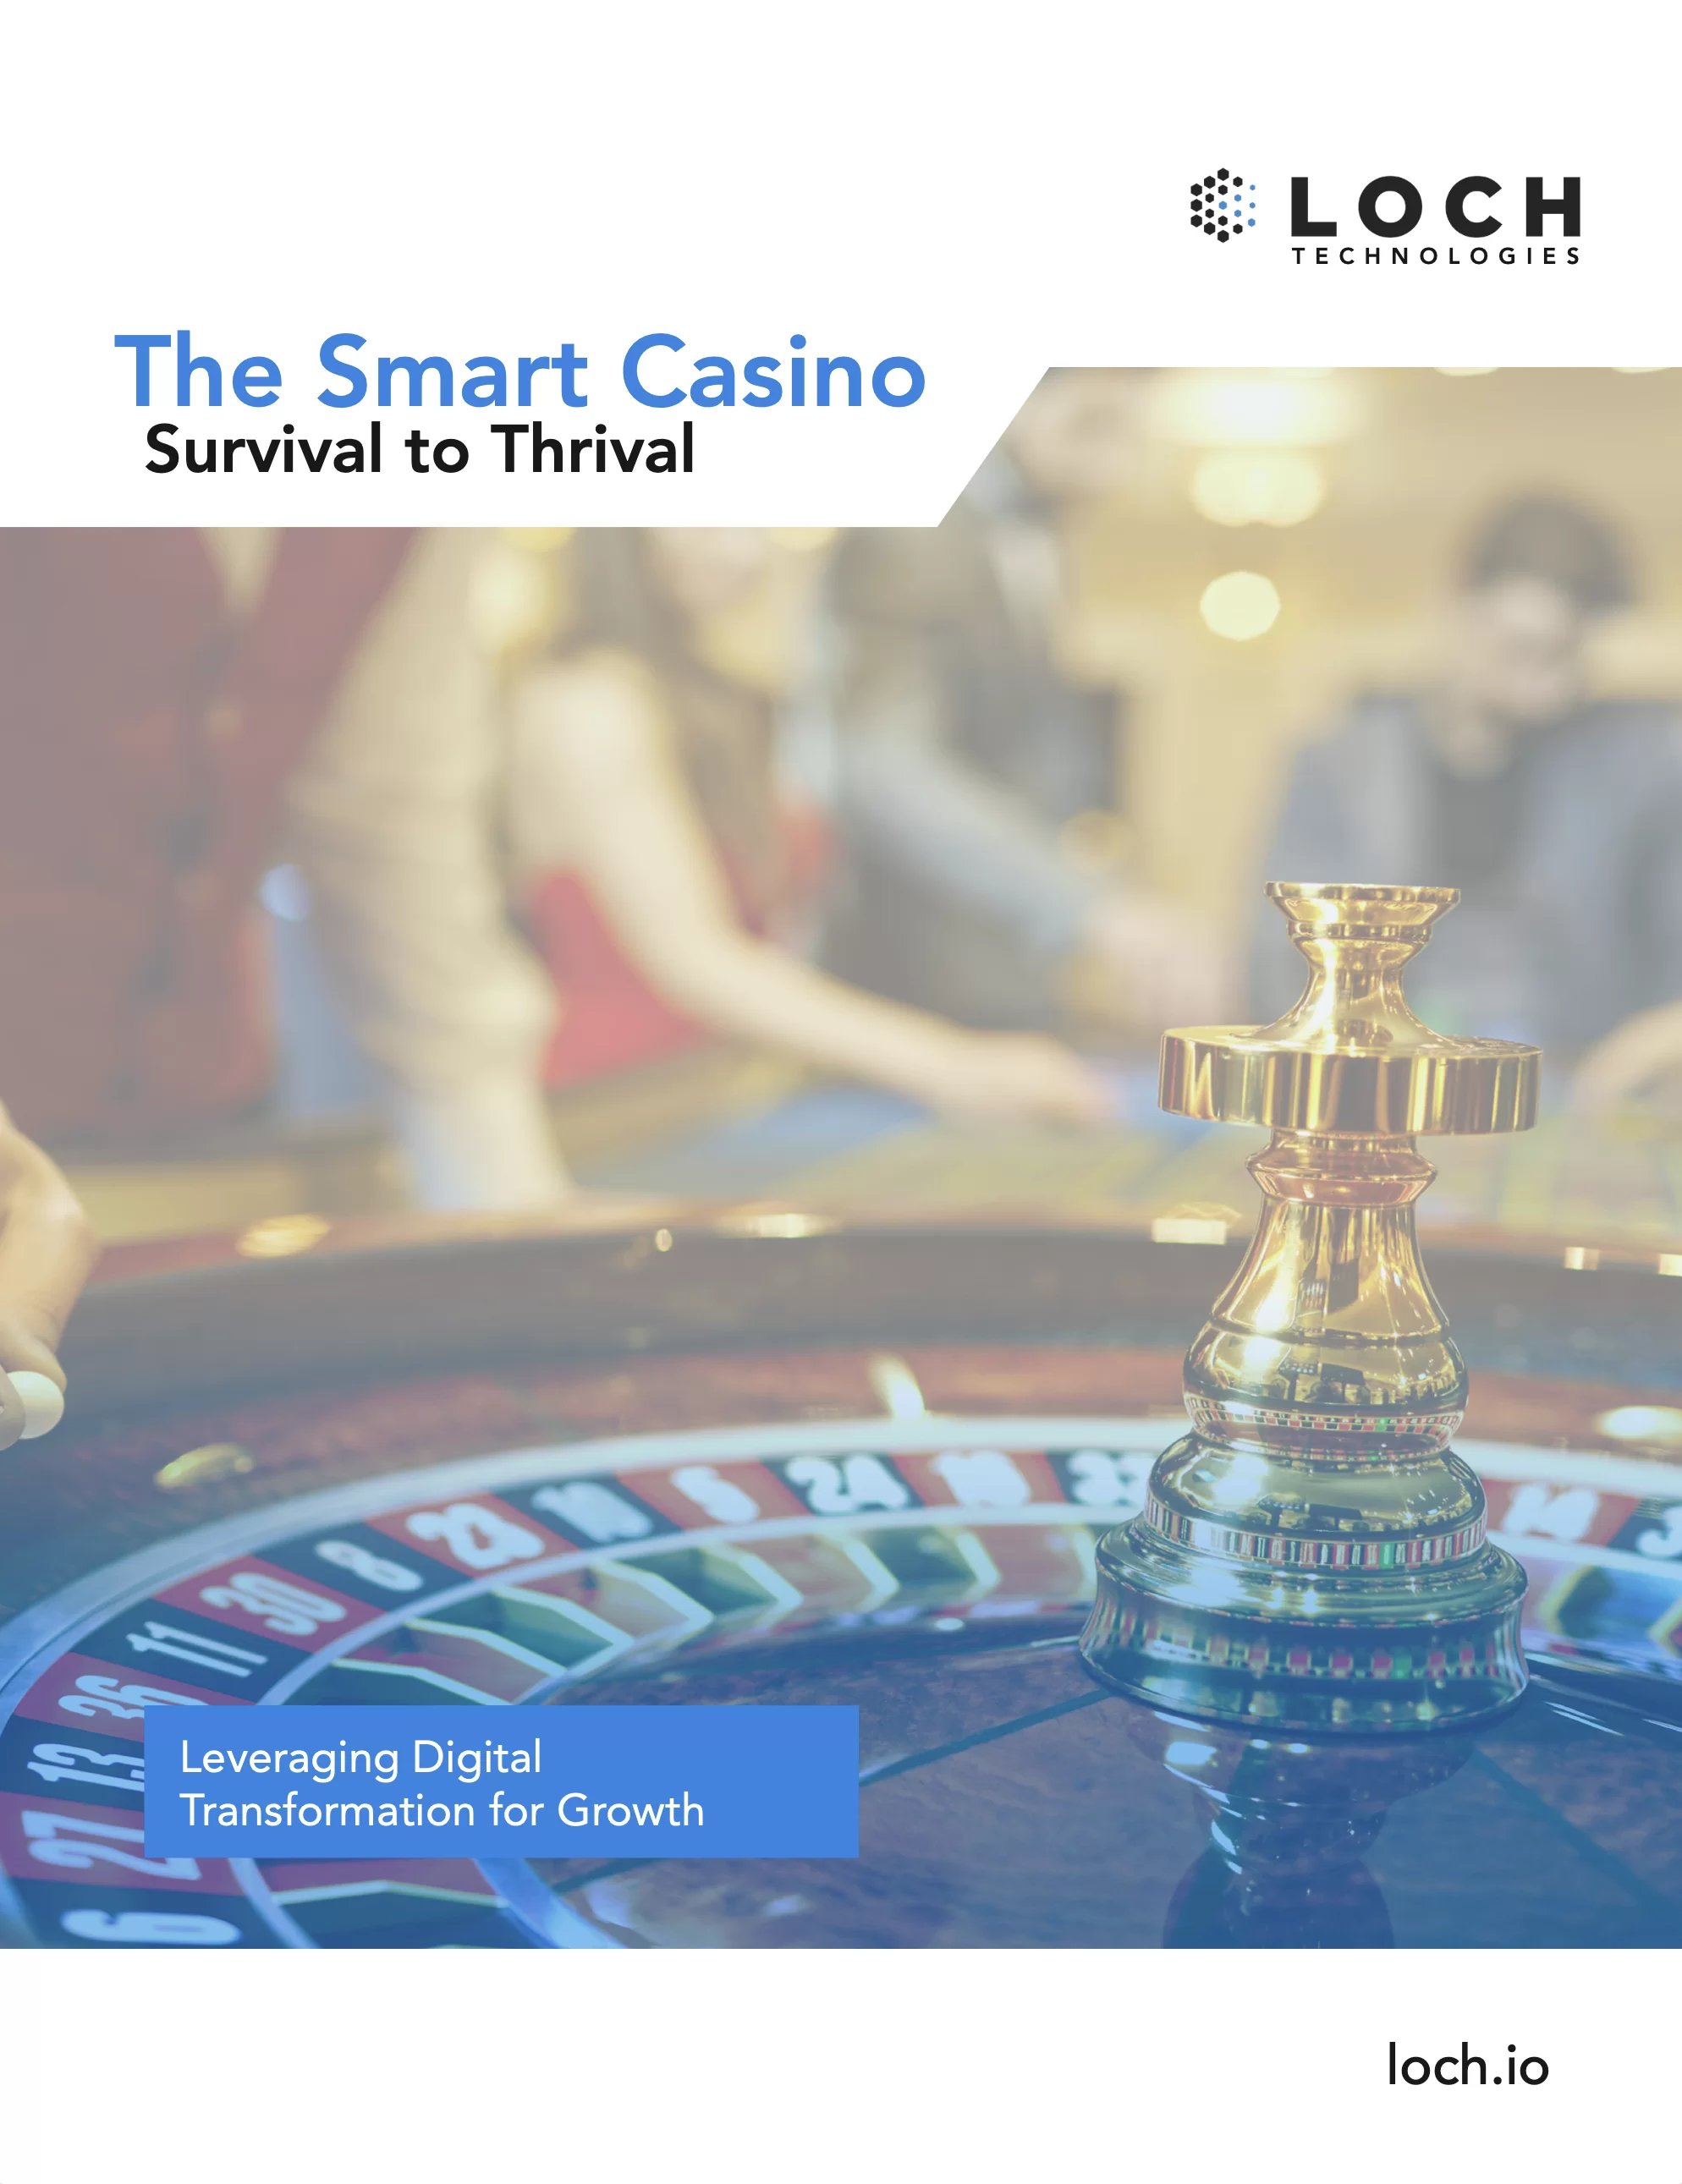 Smart-casino-white-paper-image